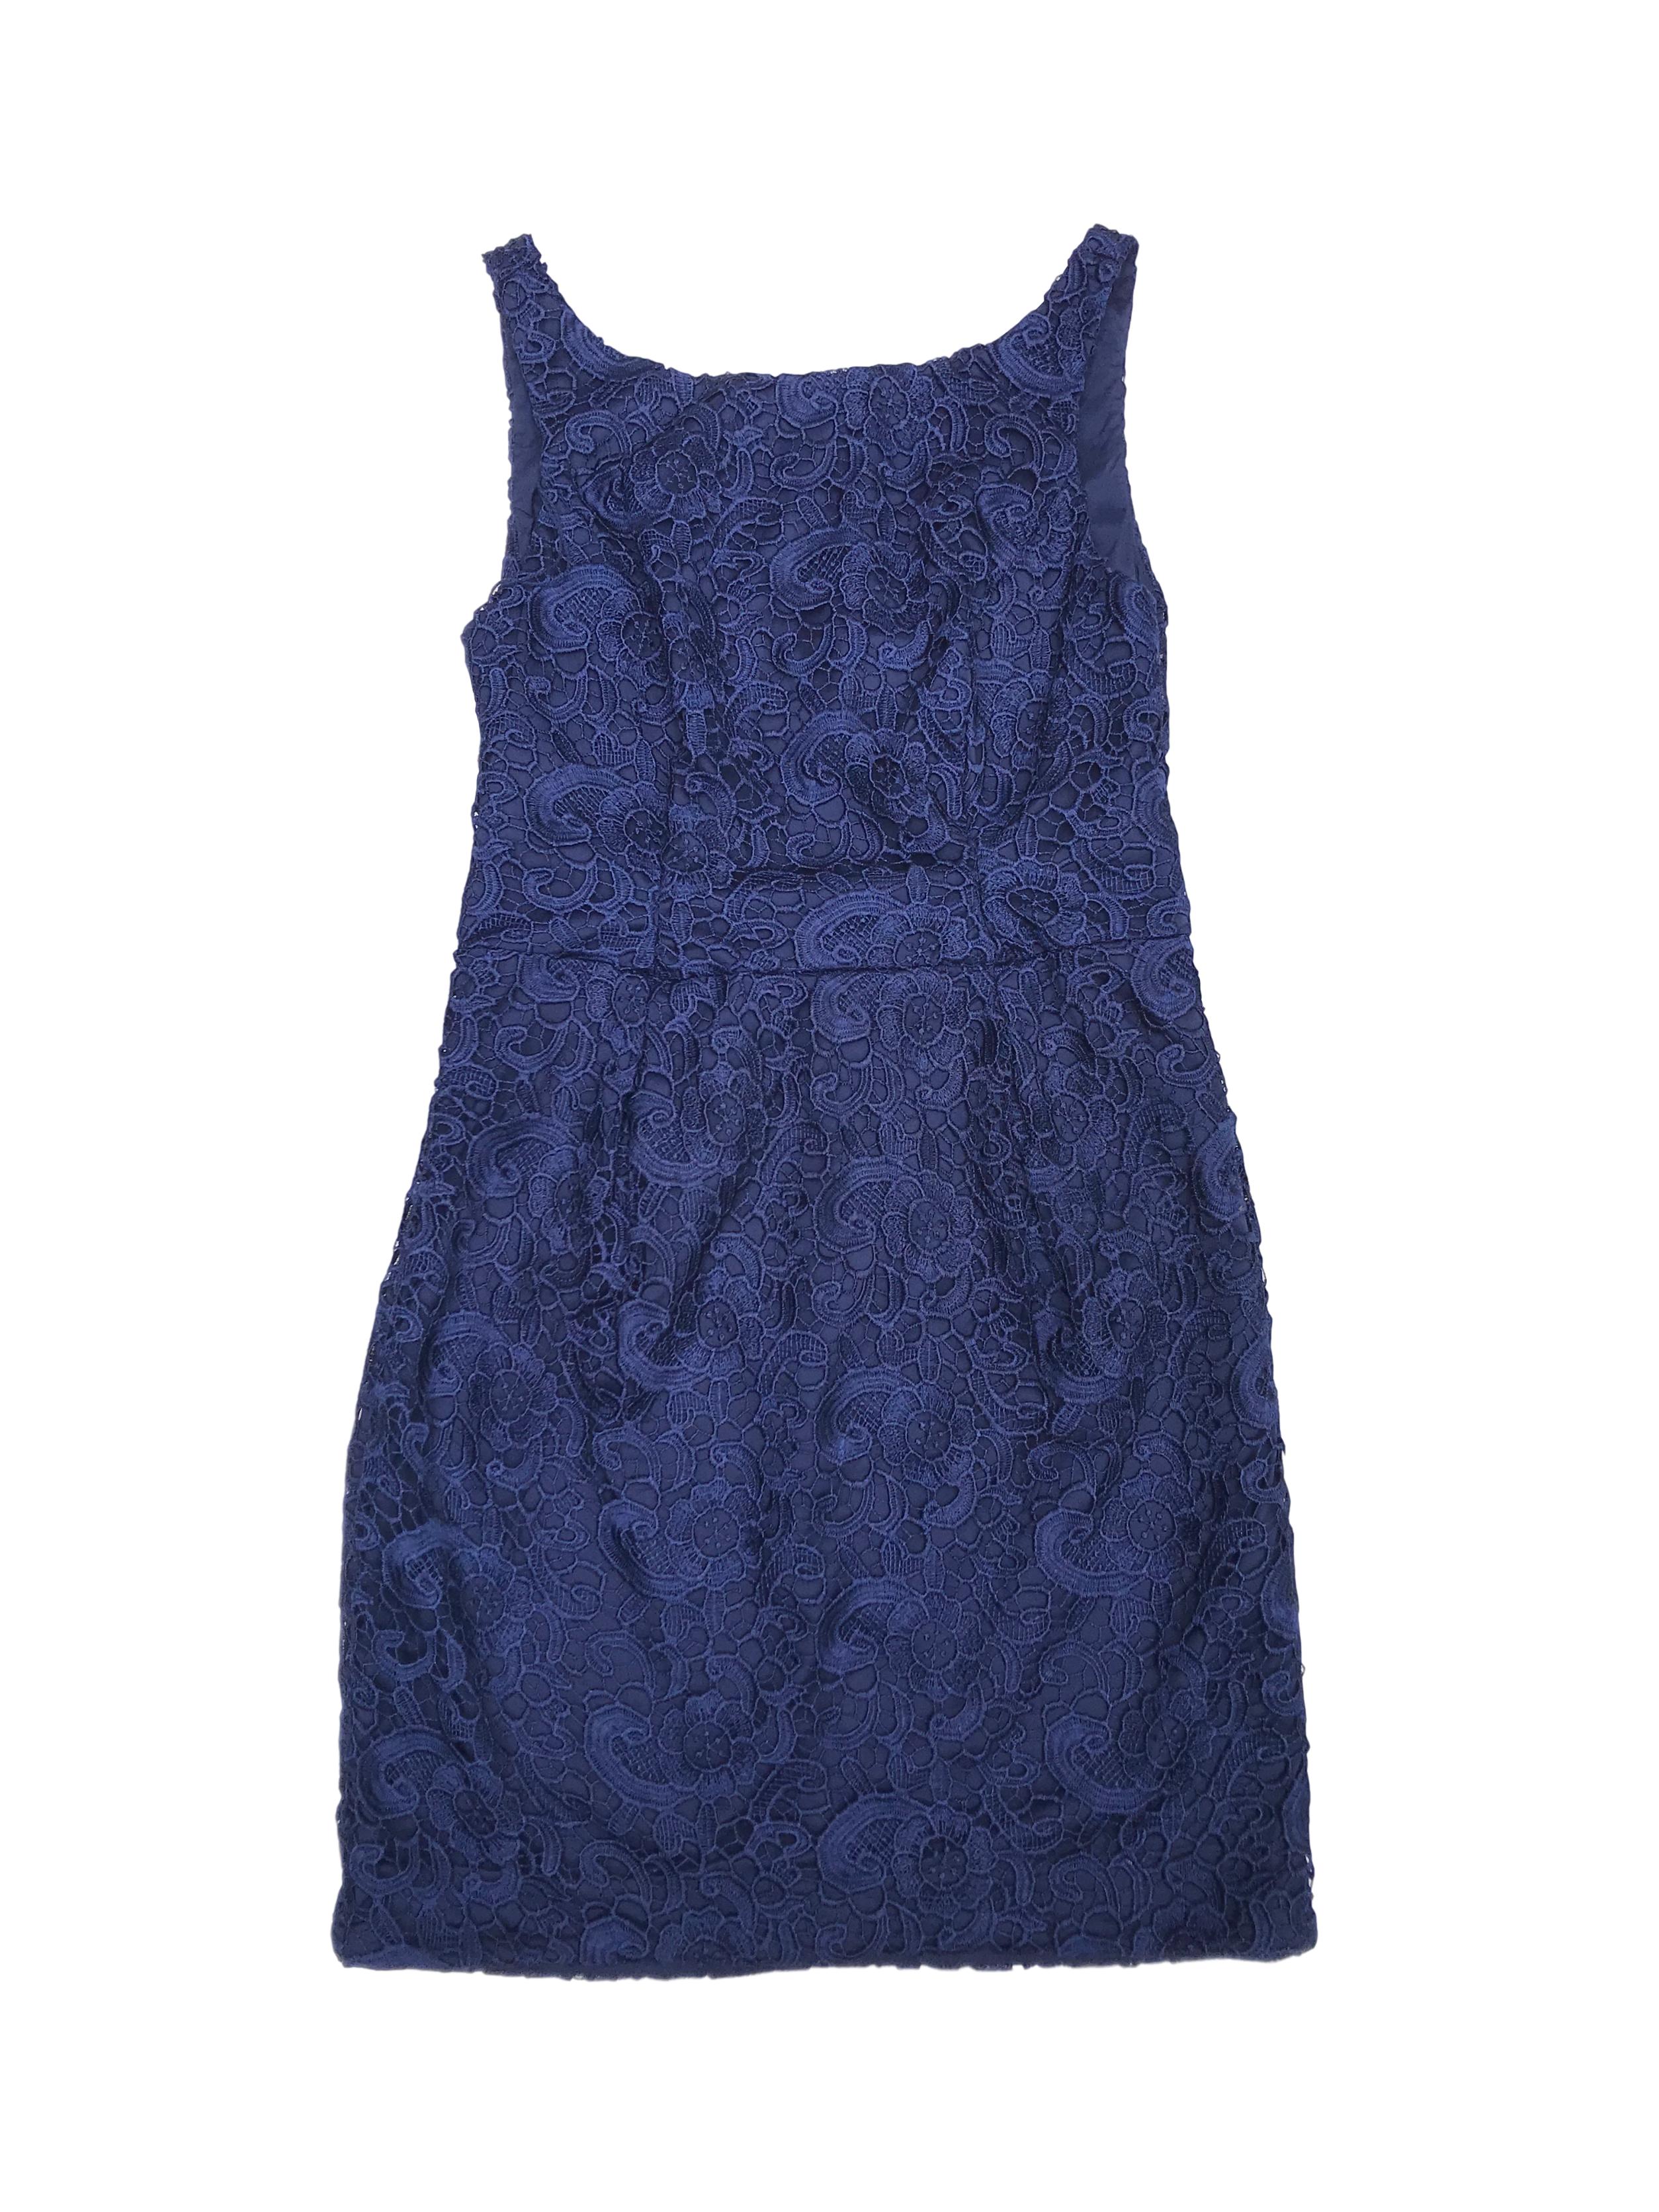 Vestido de encaje azul, forrado, con cierre y escote en la espalda. Nuevo con etiqueta. Precio original S/ 500